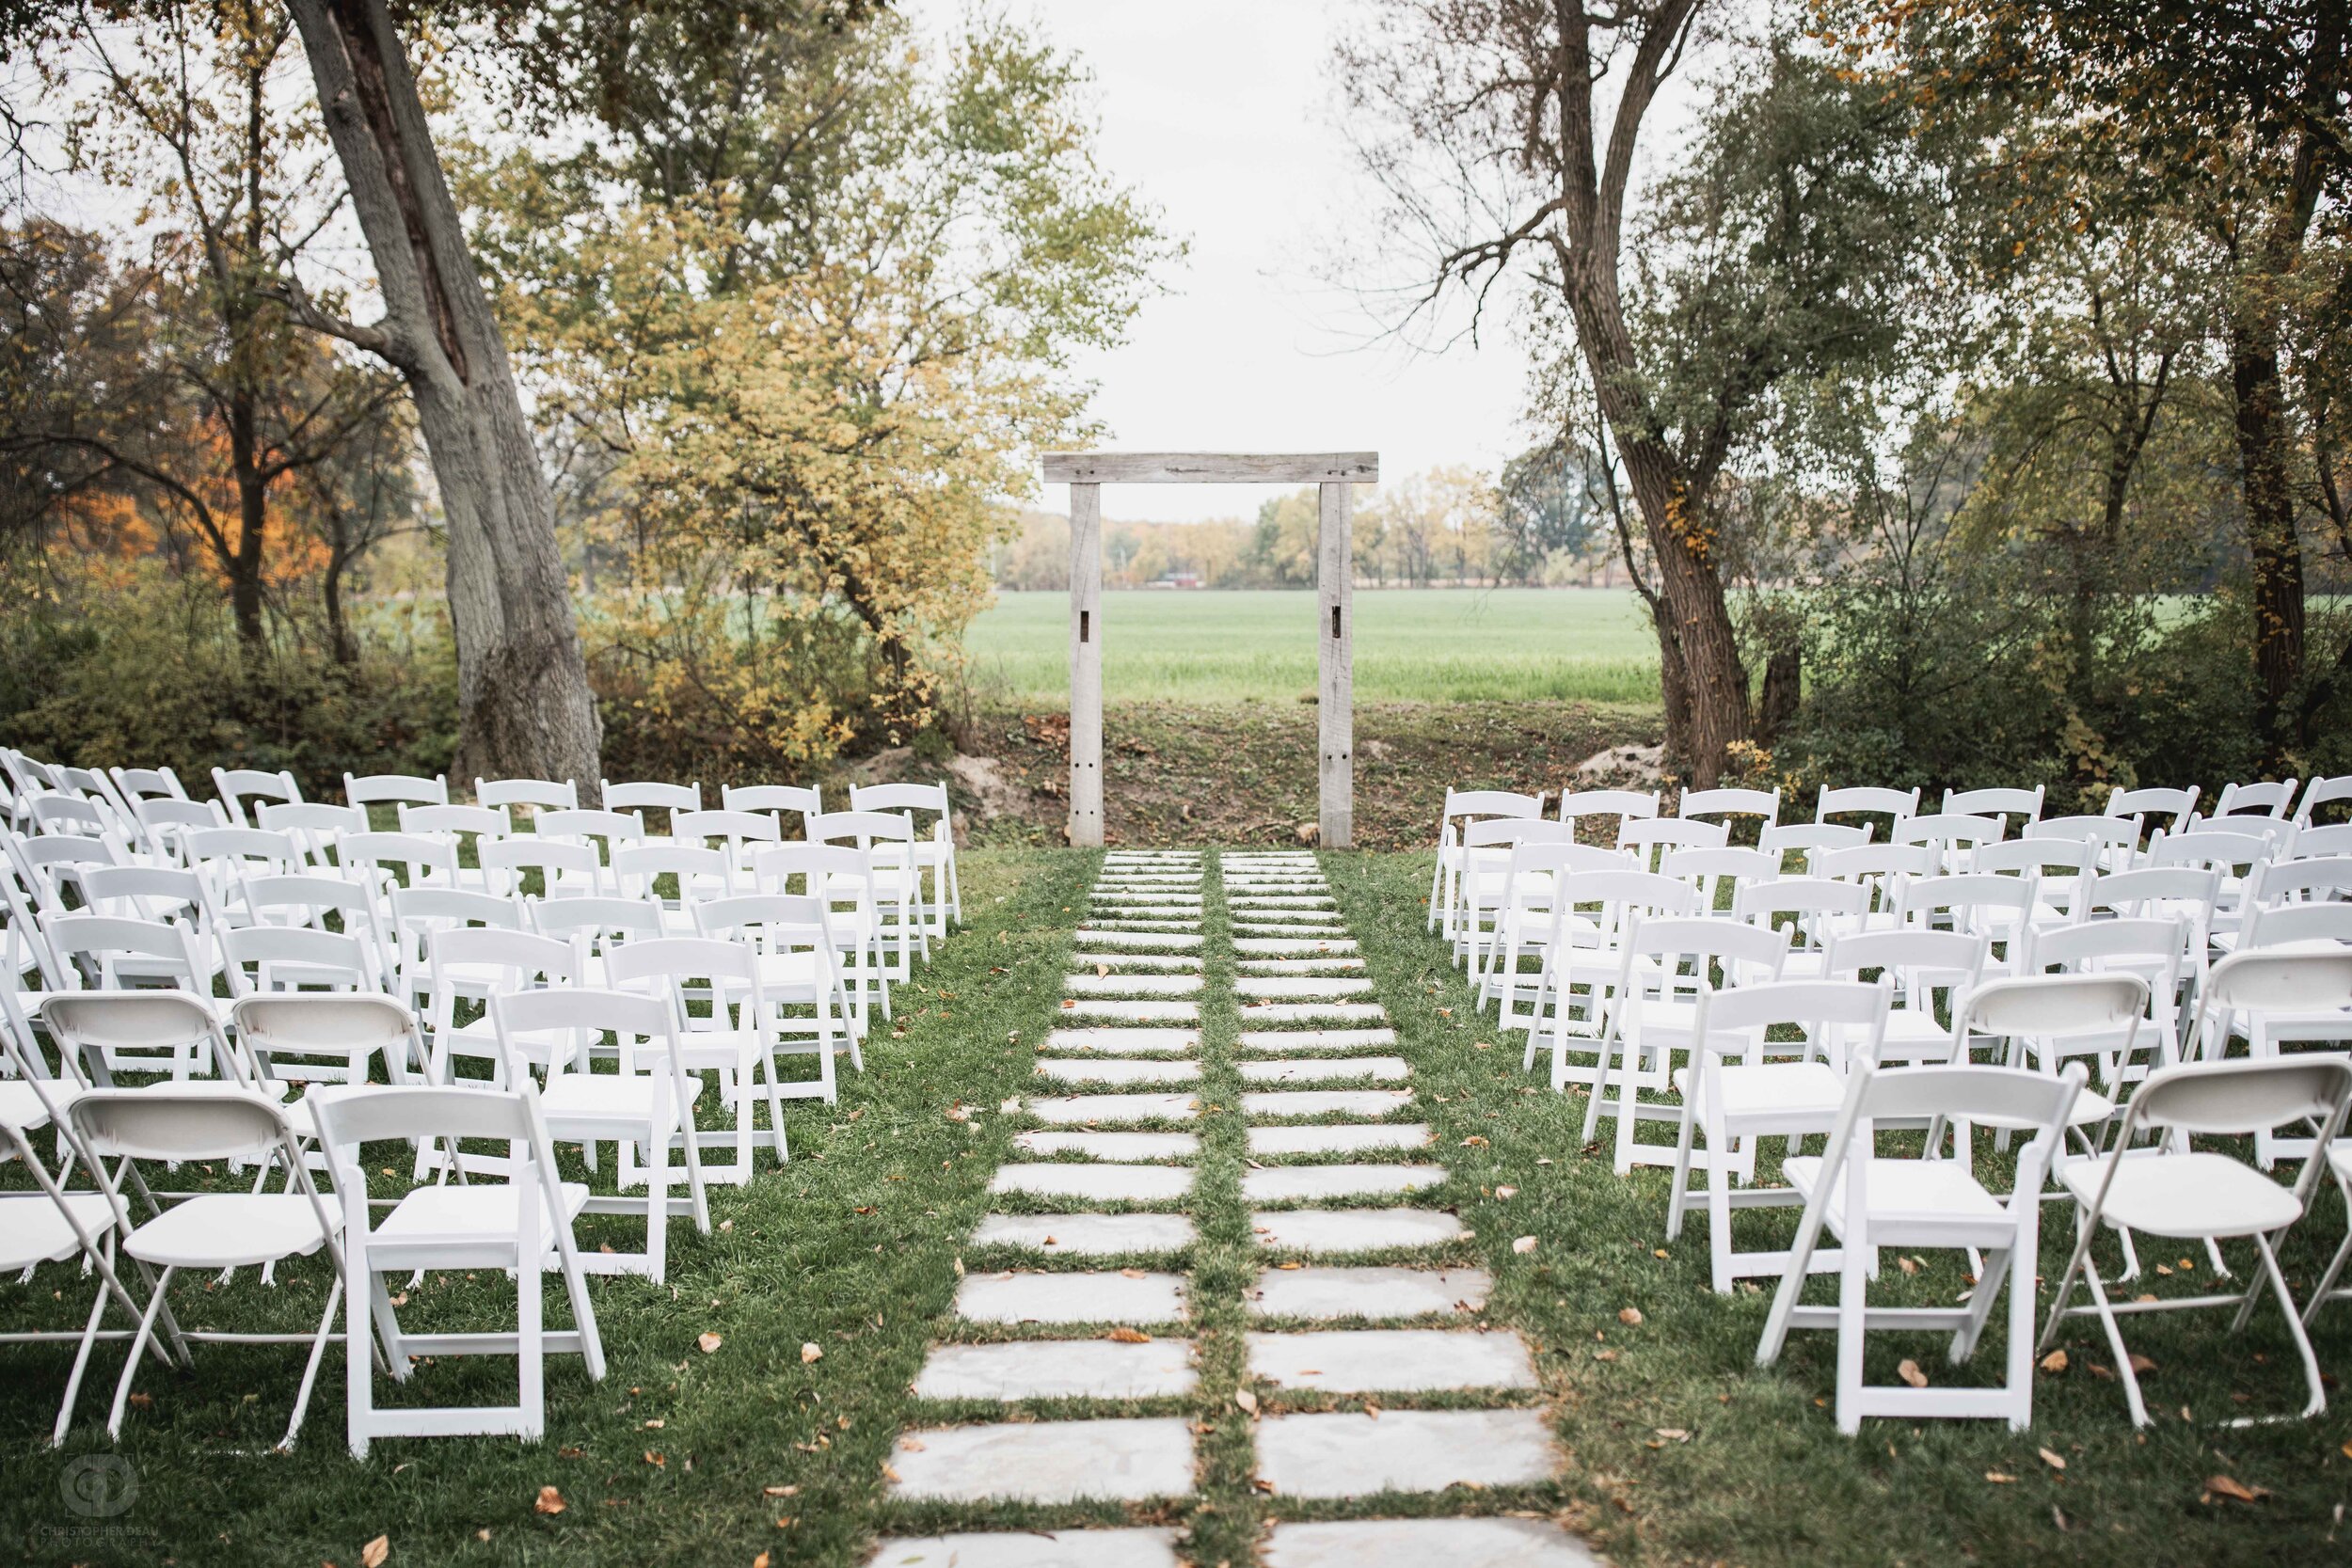  wedding ceremony seating  